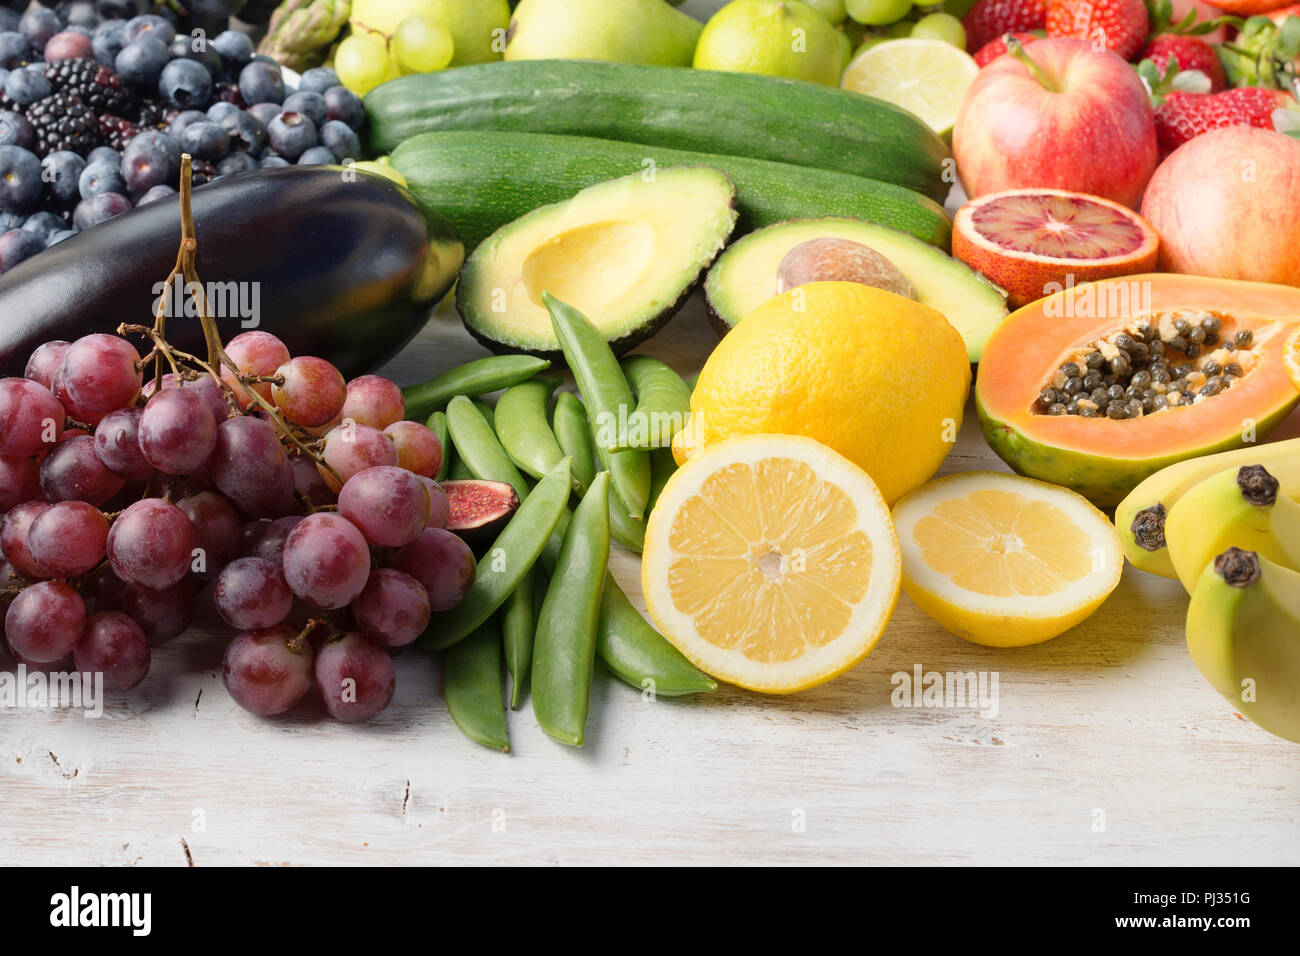 La saine alimentation, les fruits et légumes dans les couleurs arc-en-ciel sur le tableau blanc, selective focus Banque D'Images